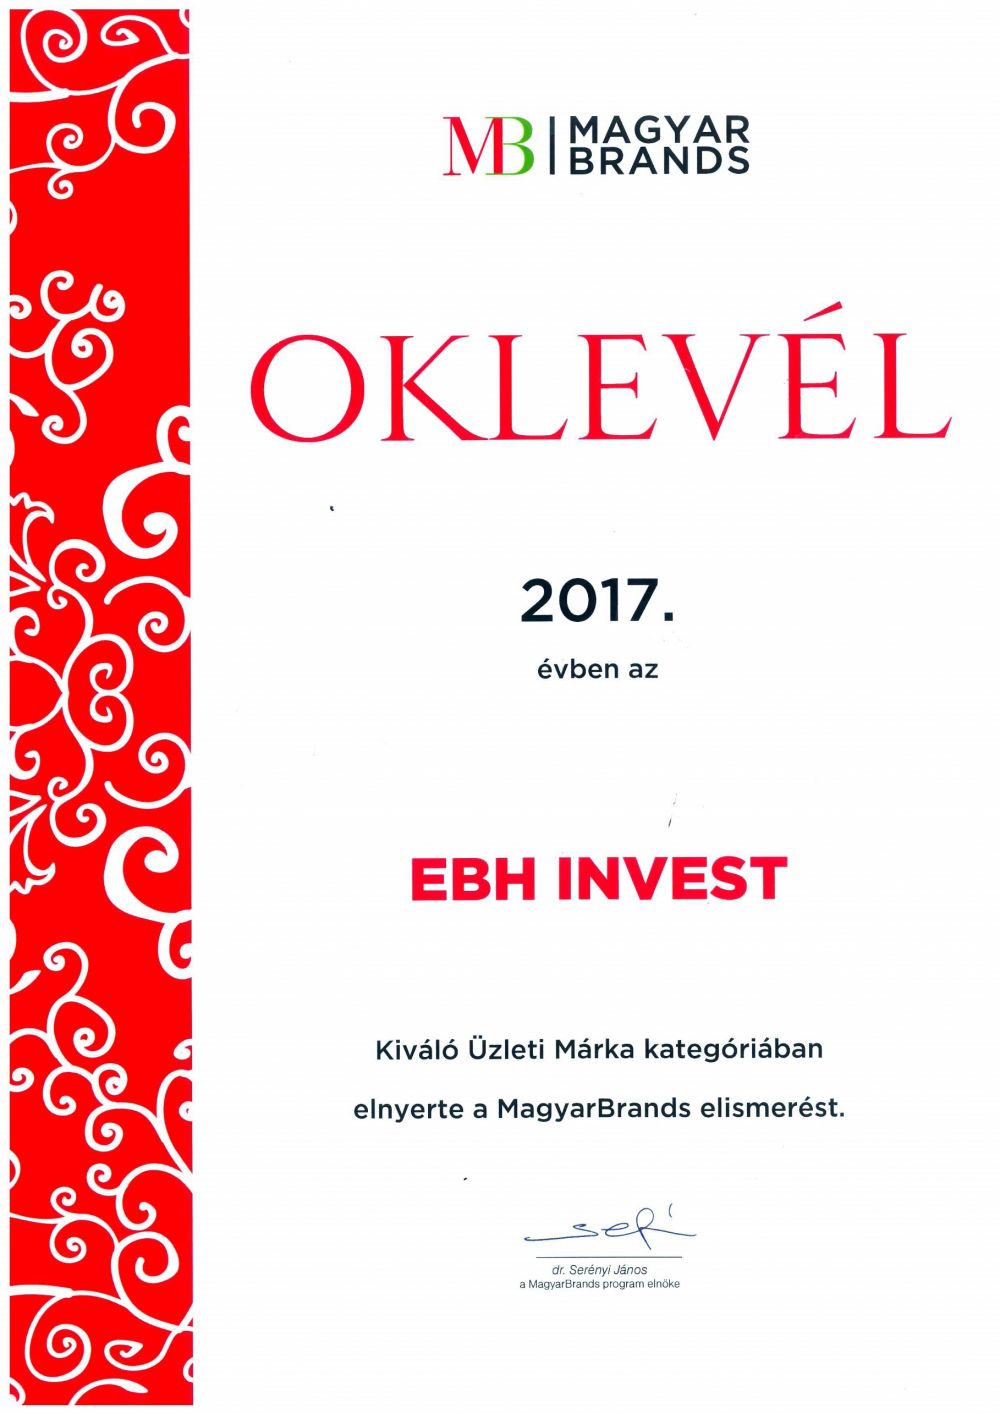 Az EB HUNGARY INVEST Kft. 2017-ben díjazott lett a MagyarBrands üzleti kategóriában.